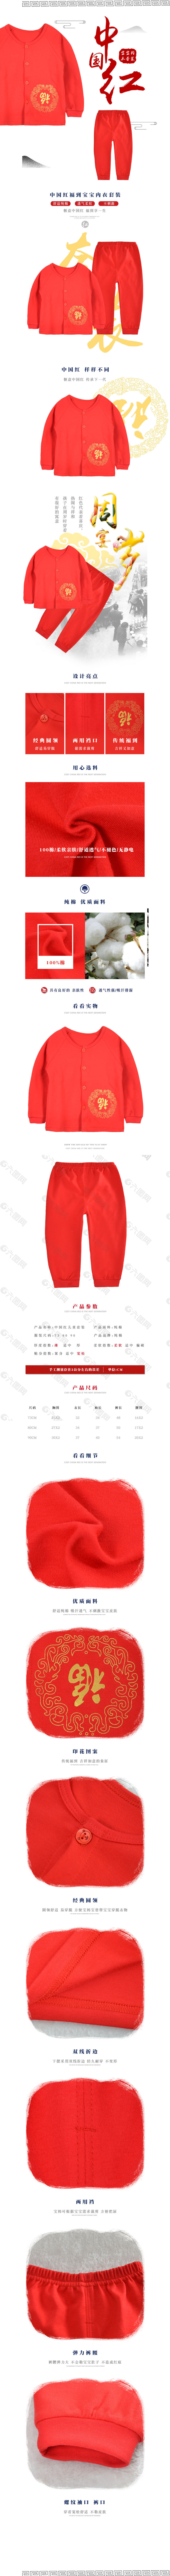 古风吉祥如意福中国红套装详情页psd模板